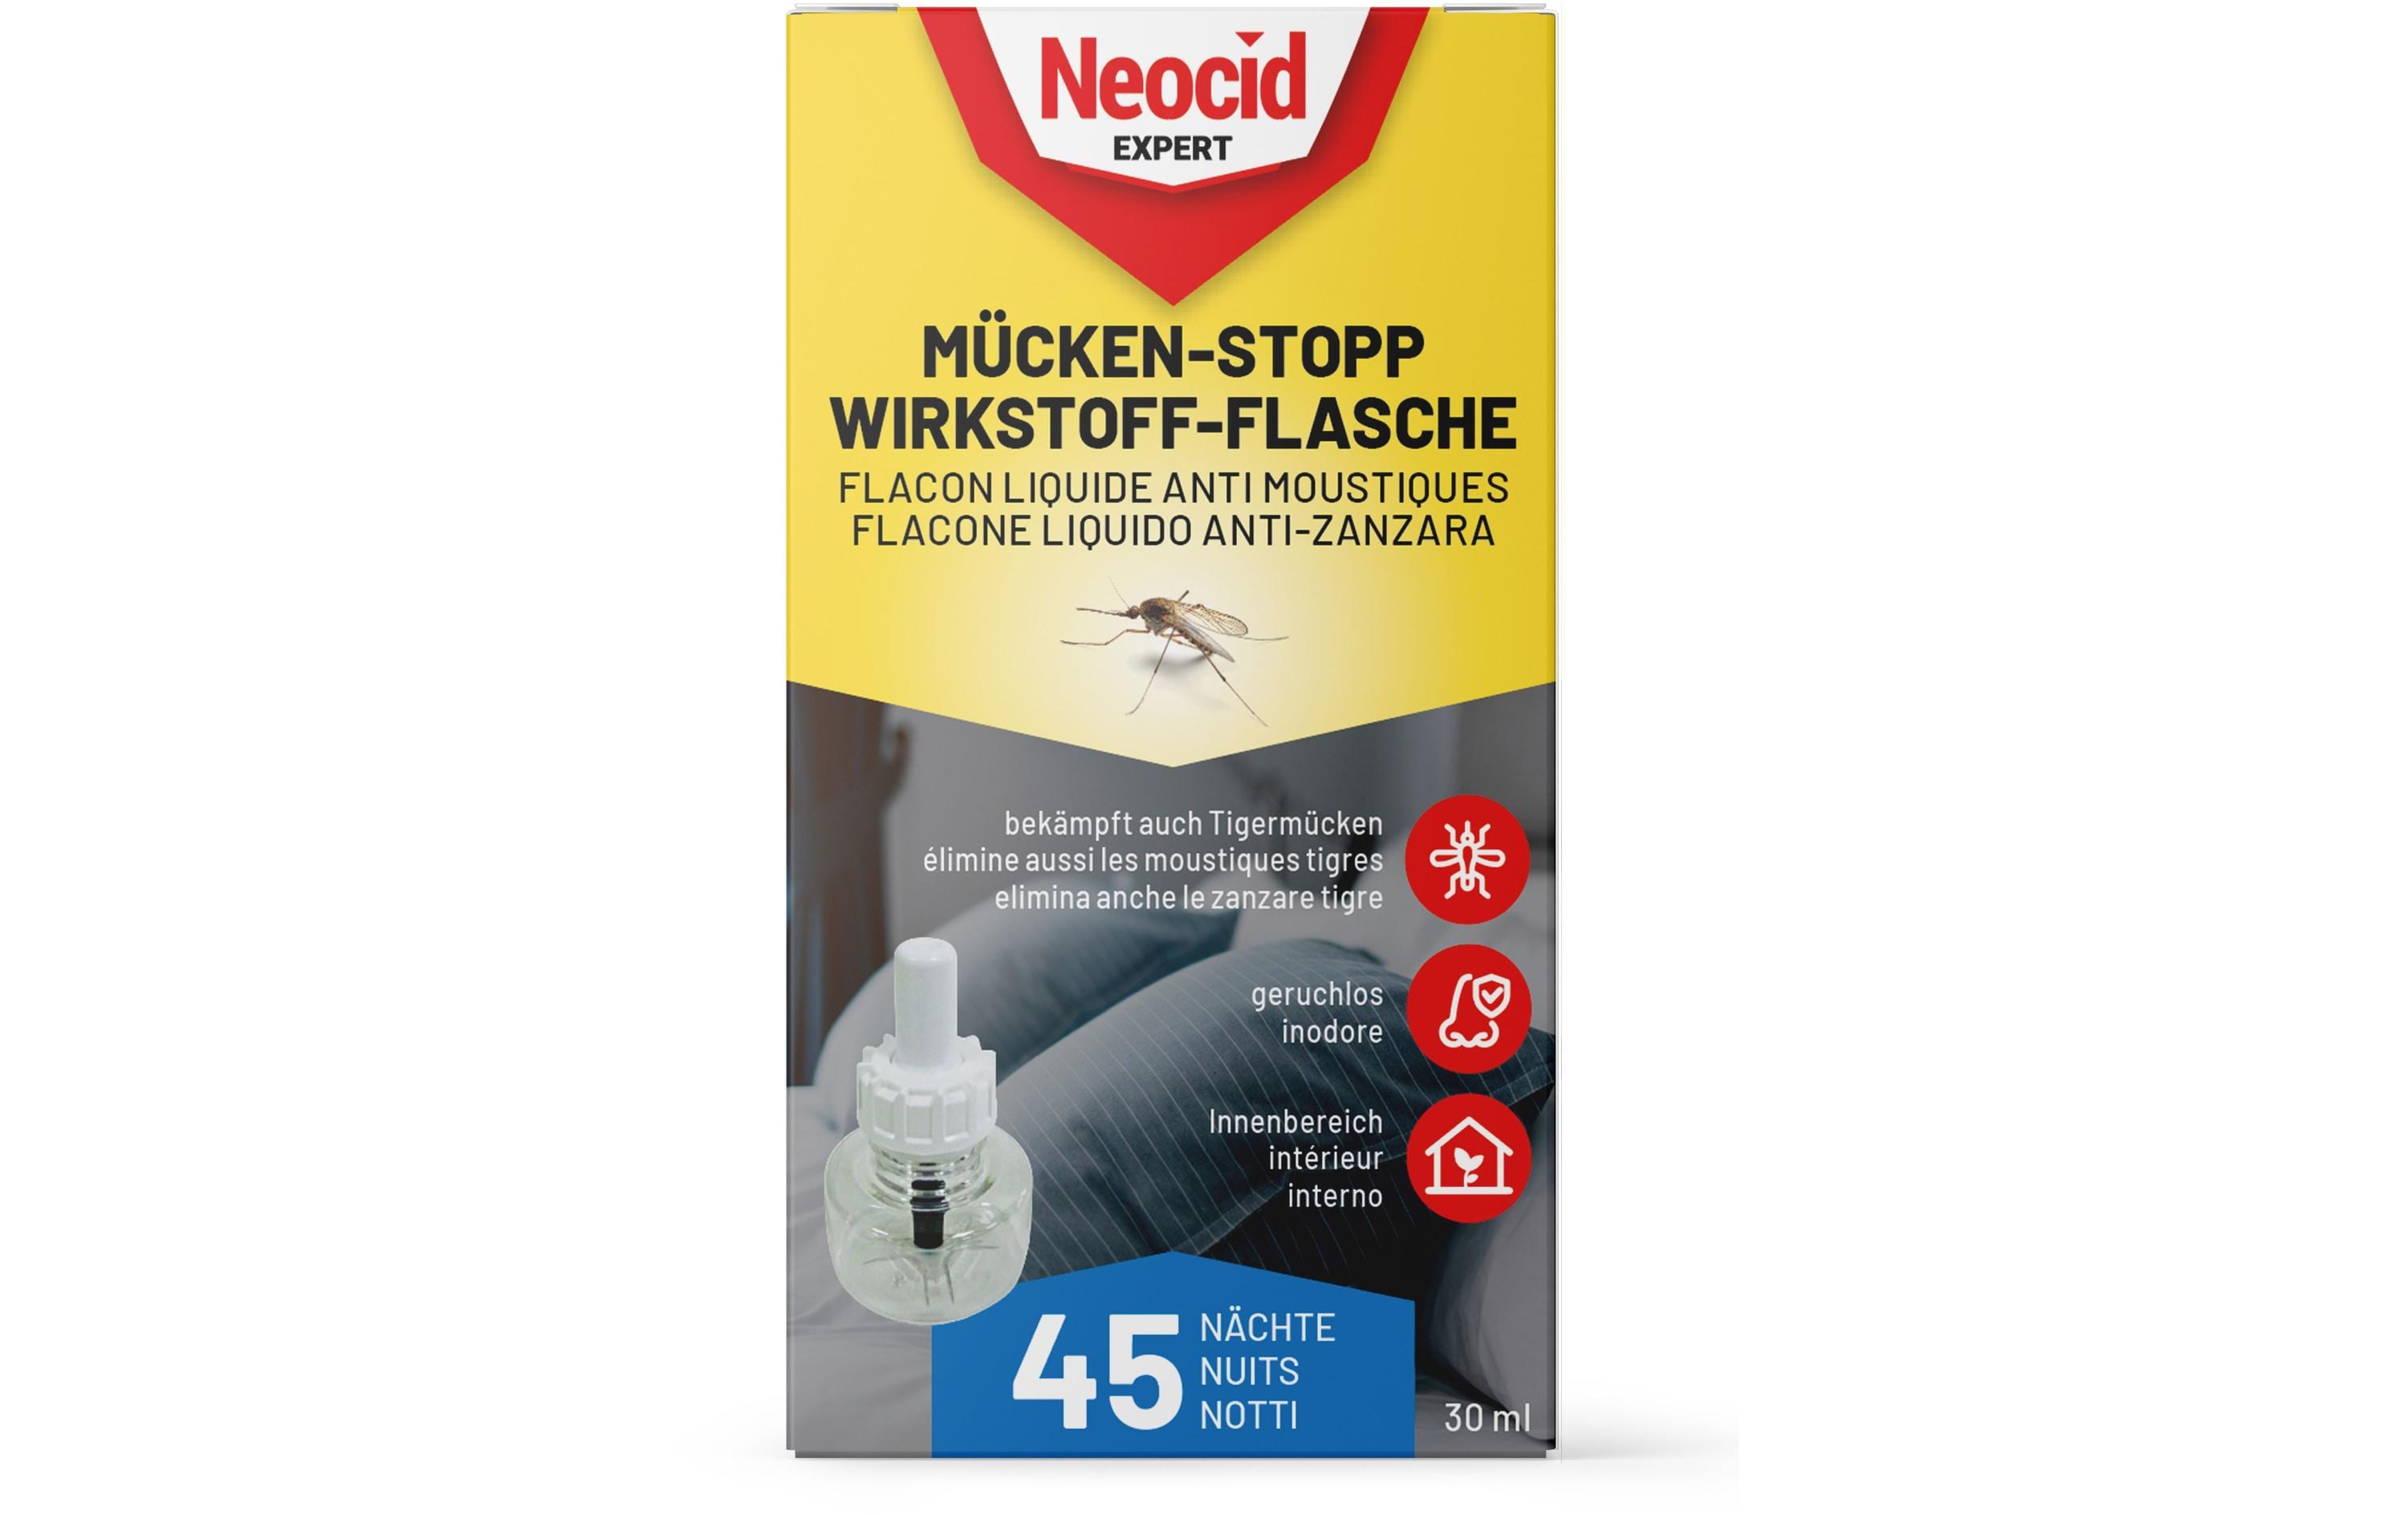 Neocid Expert Mückenstecker Mücken-Stopp Wirkstoff-Flasche, 1 Stück